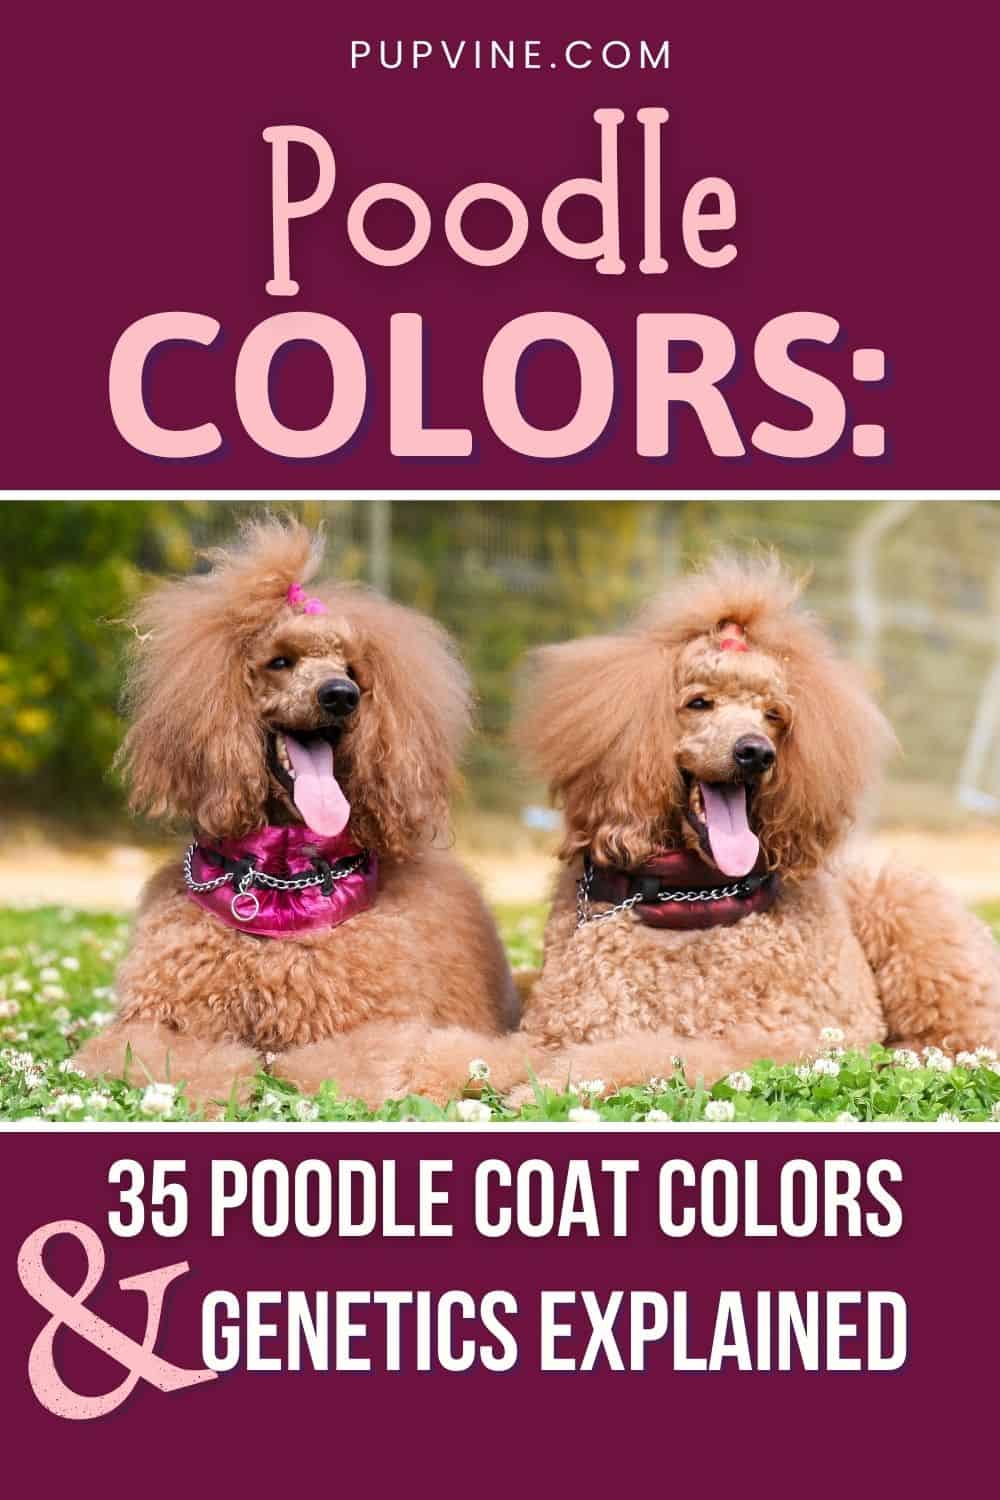 Poodle Colors 35 Poodle Coat Colors And Genetics Explained